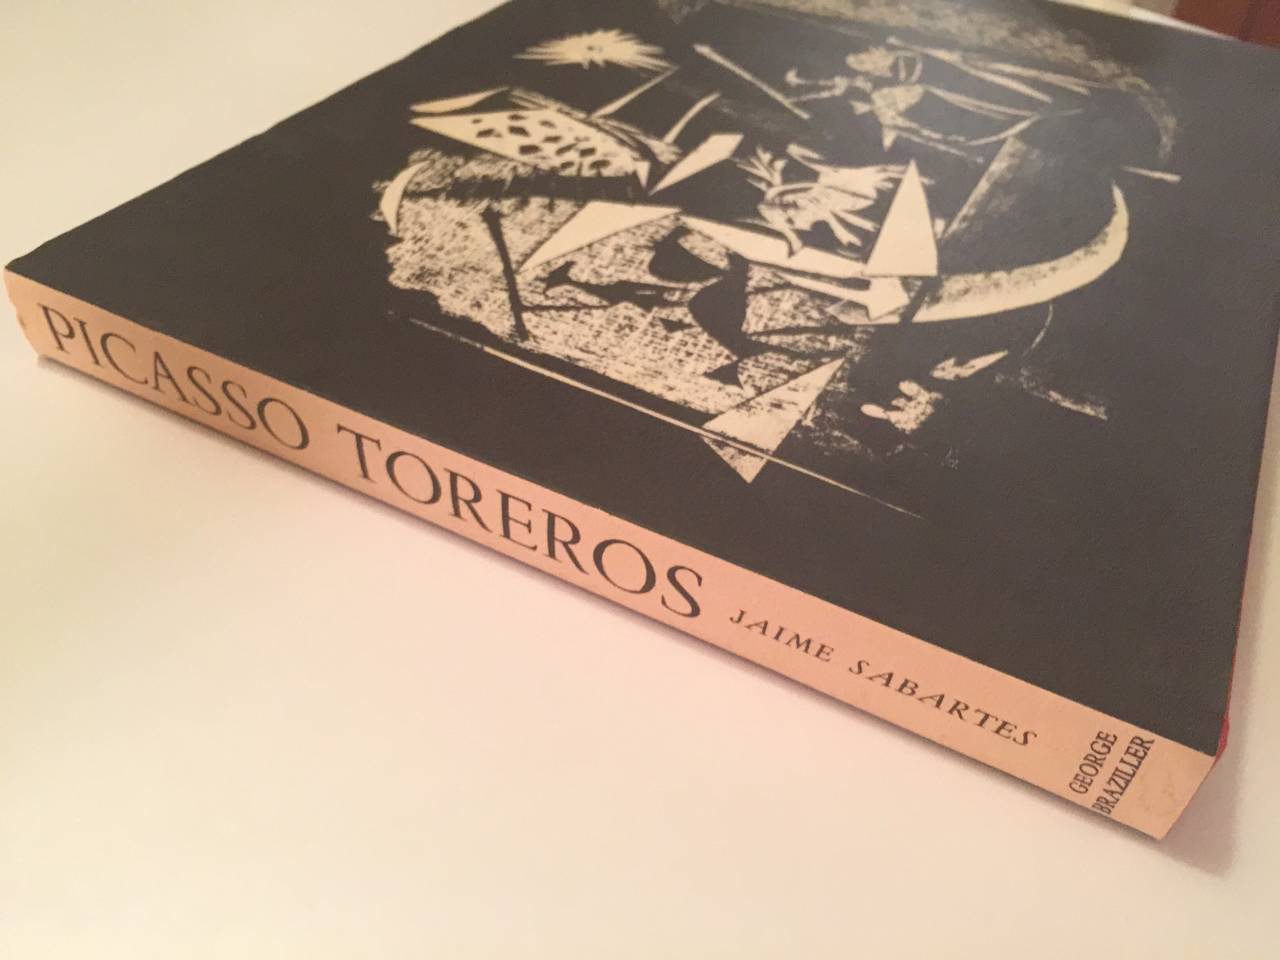 Mid-Century Modern Picasso Toreros with Four Original Lithographs Book